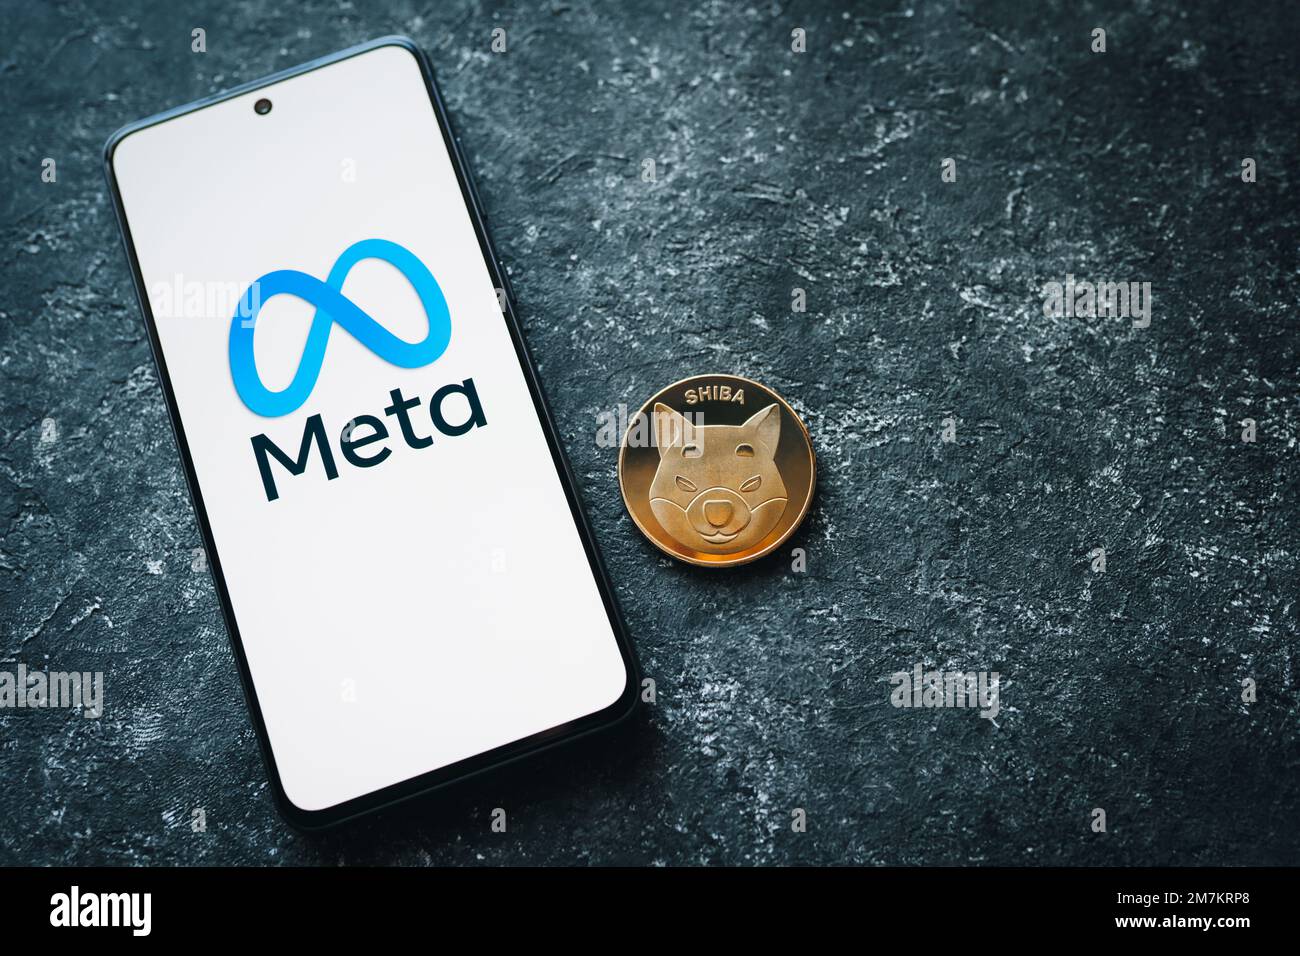 Shiba Inu crypto coin et logo Meta sur l'écran du téléphone. Le jeton SHIB et le métaverse. Crypto-monnaie MSHIBA ou Meta Shiba. Swansea, Royaume-Uni - 3 janvier 2023. Banque D'Images